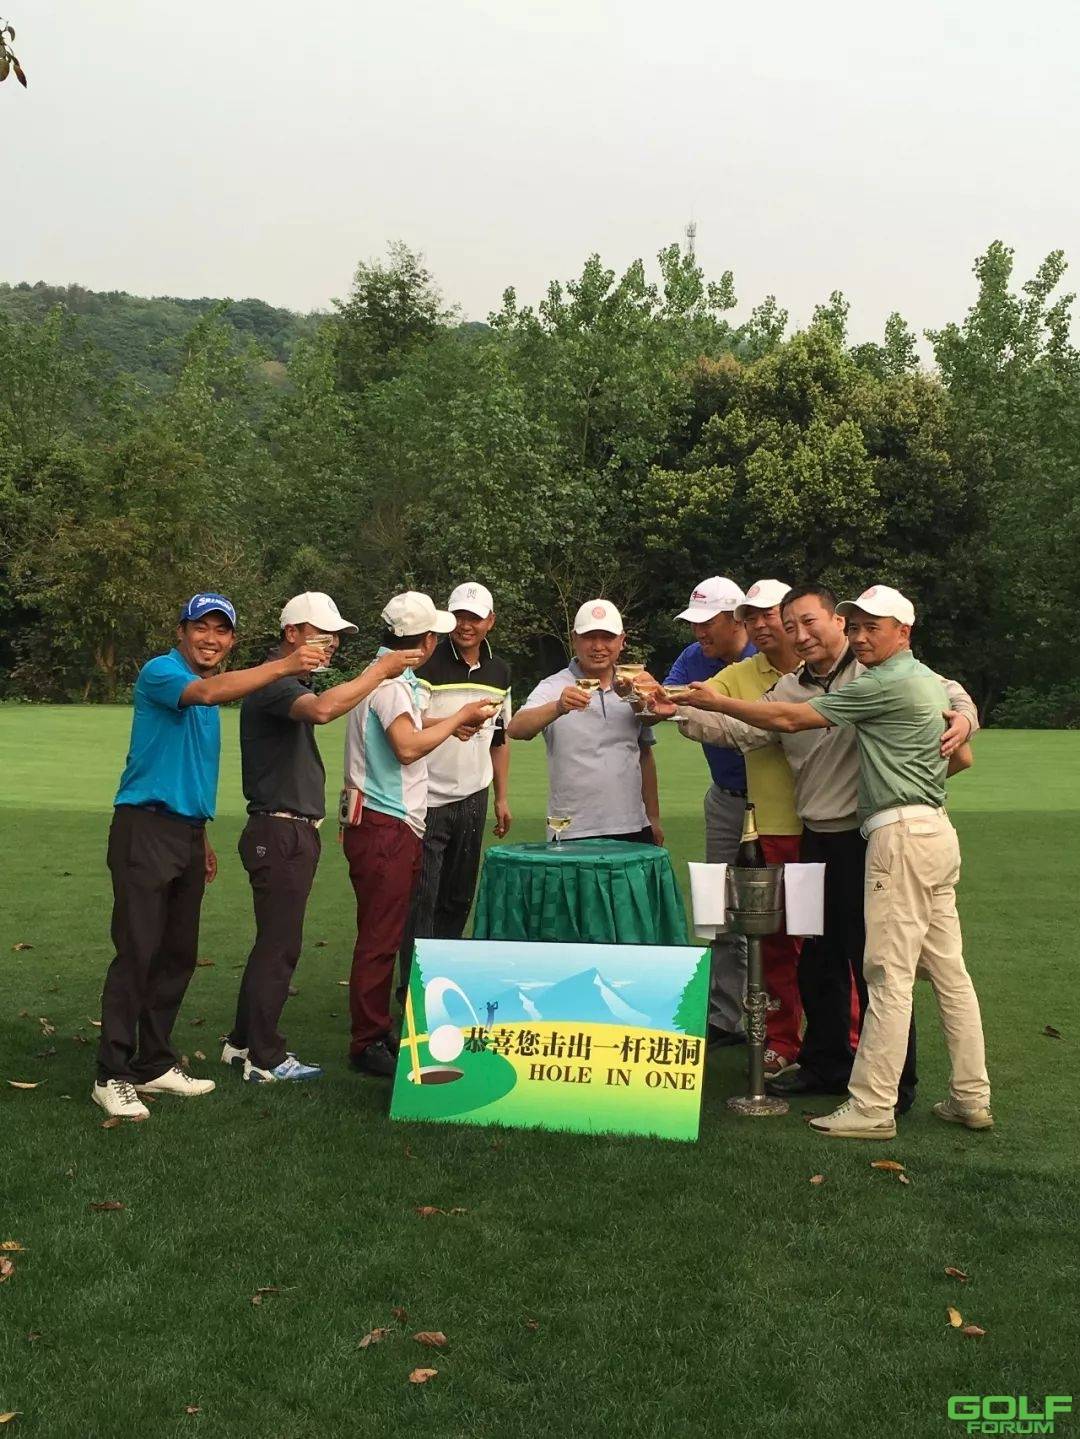 2018上邦-庆隆杯重庆高尔夫球队际联赛首战打响